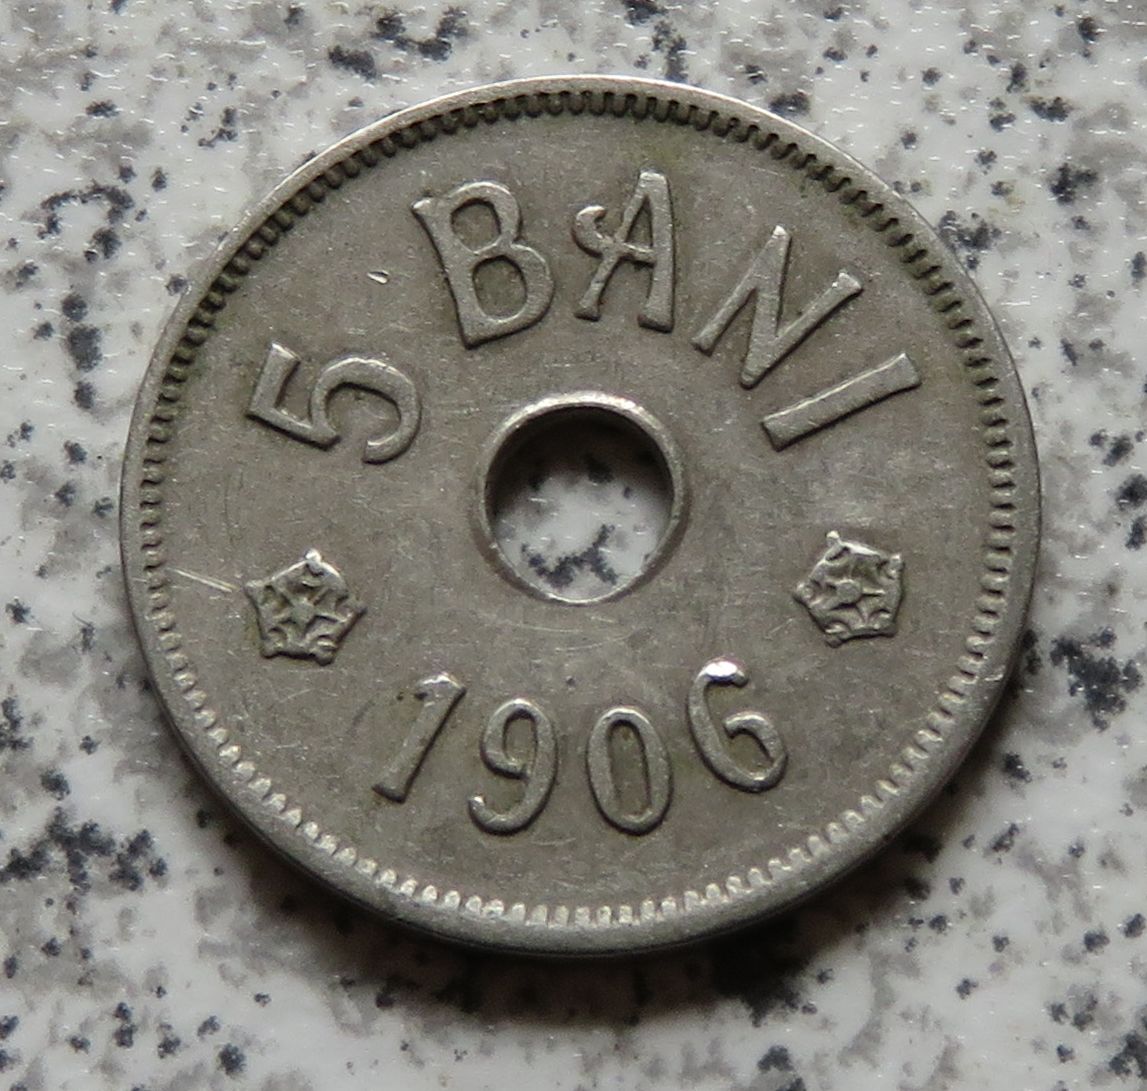  Rumänien 5 Bani 1906 J   